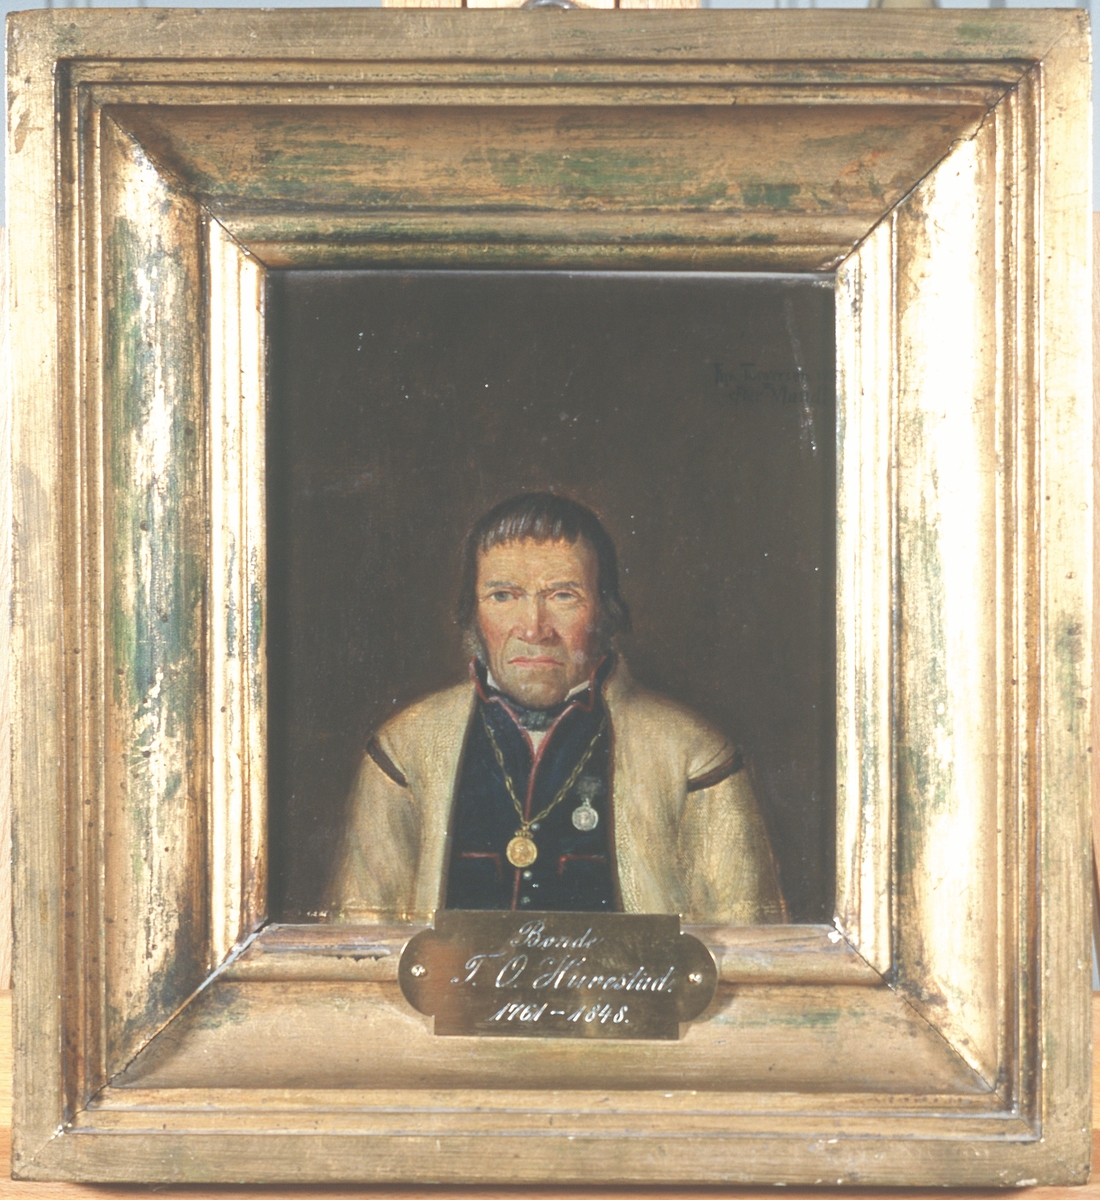 Portrett av Tallev O. Huvestad. Hvit trøye (jakke) og mørk vest m/røde kanter. 
Frederik VI's erindringsmedalje i kjede om halsen, Danebrog eller Borgerdådsmedaljen på brystet.